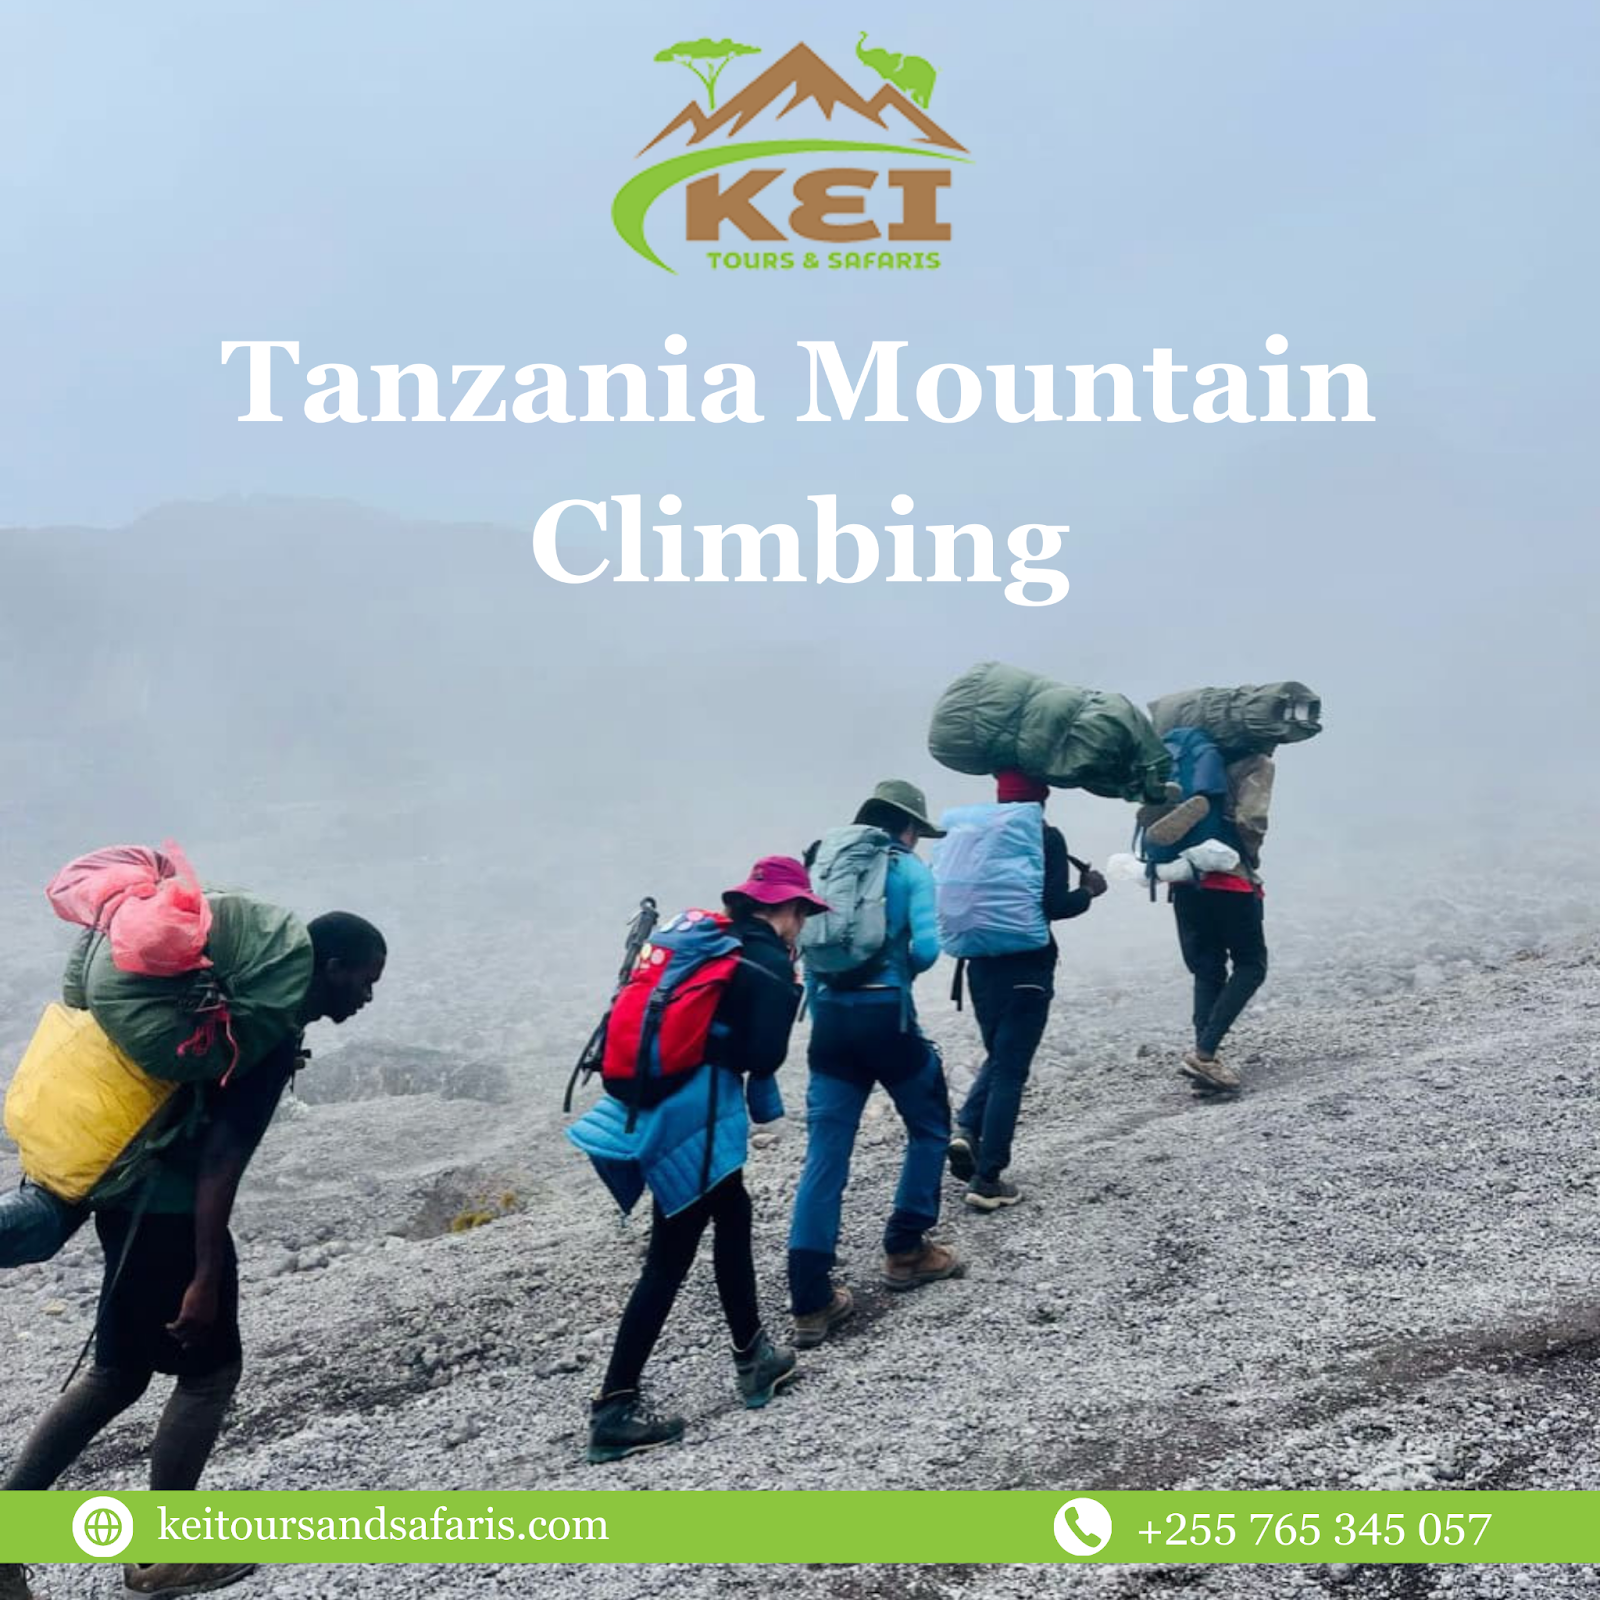 Tanzania mountain climbing adventure